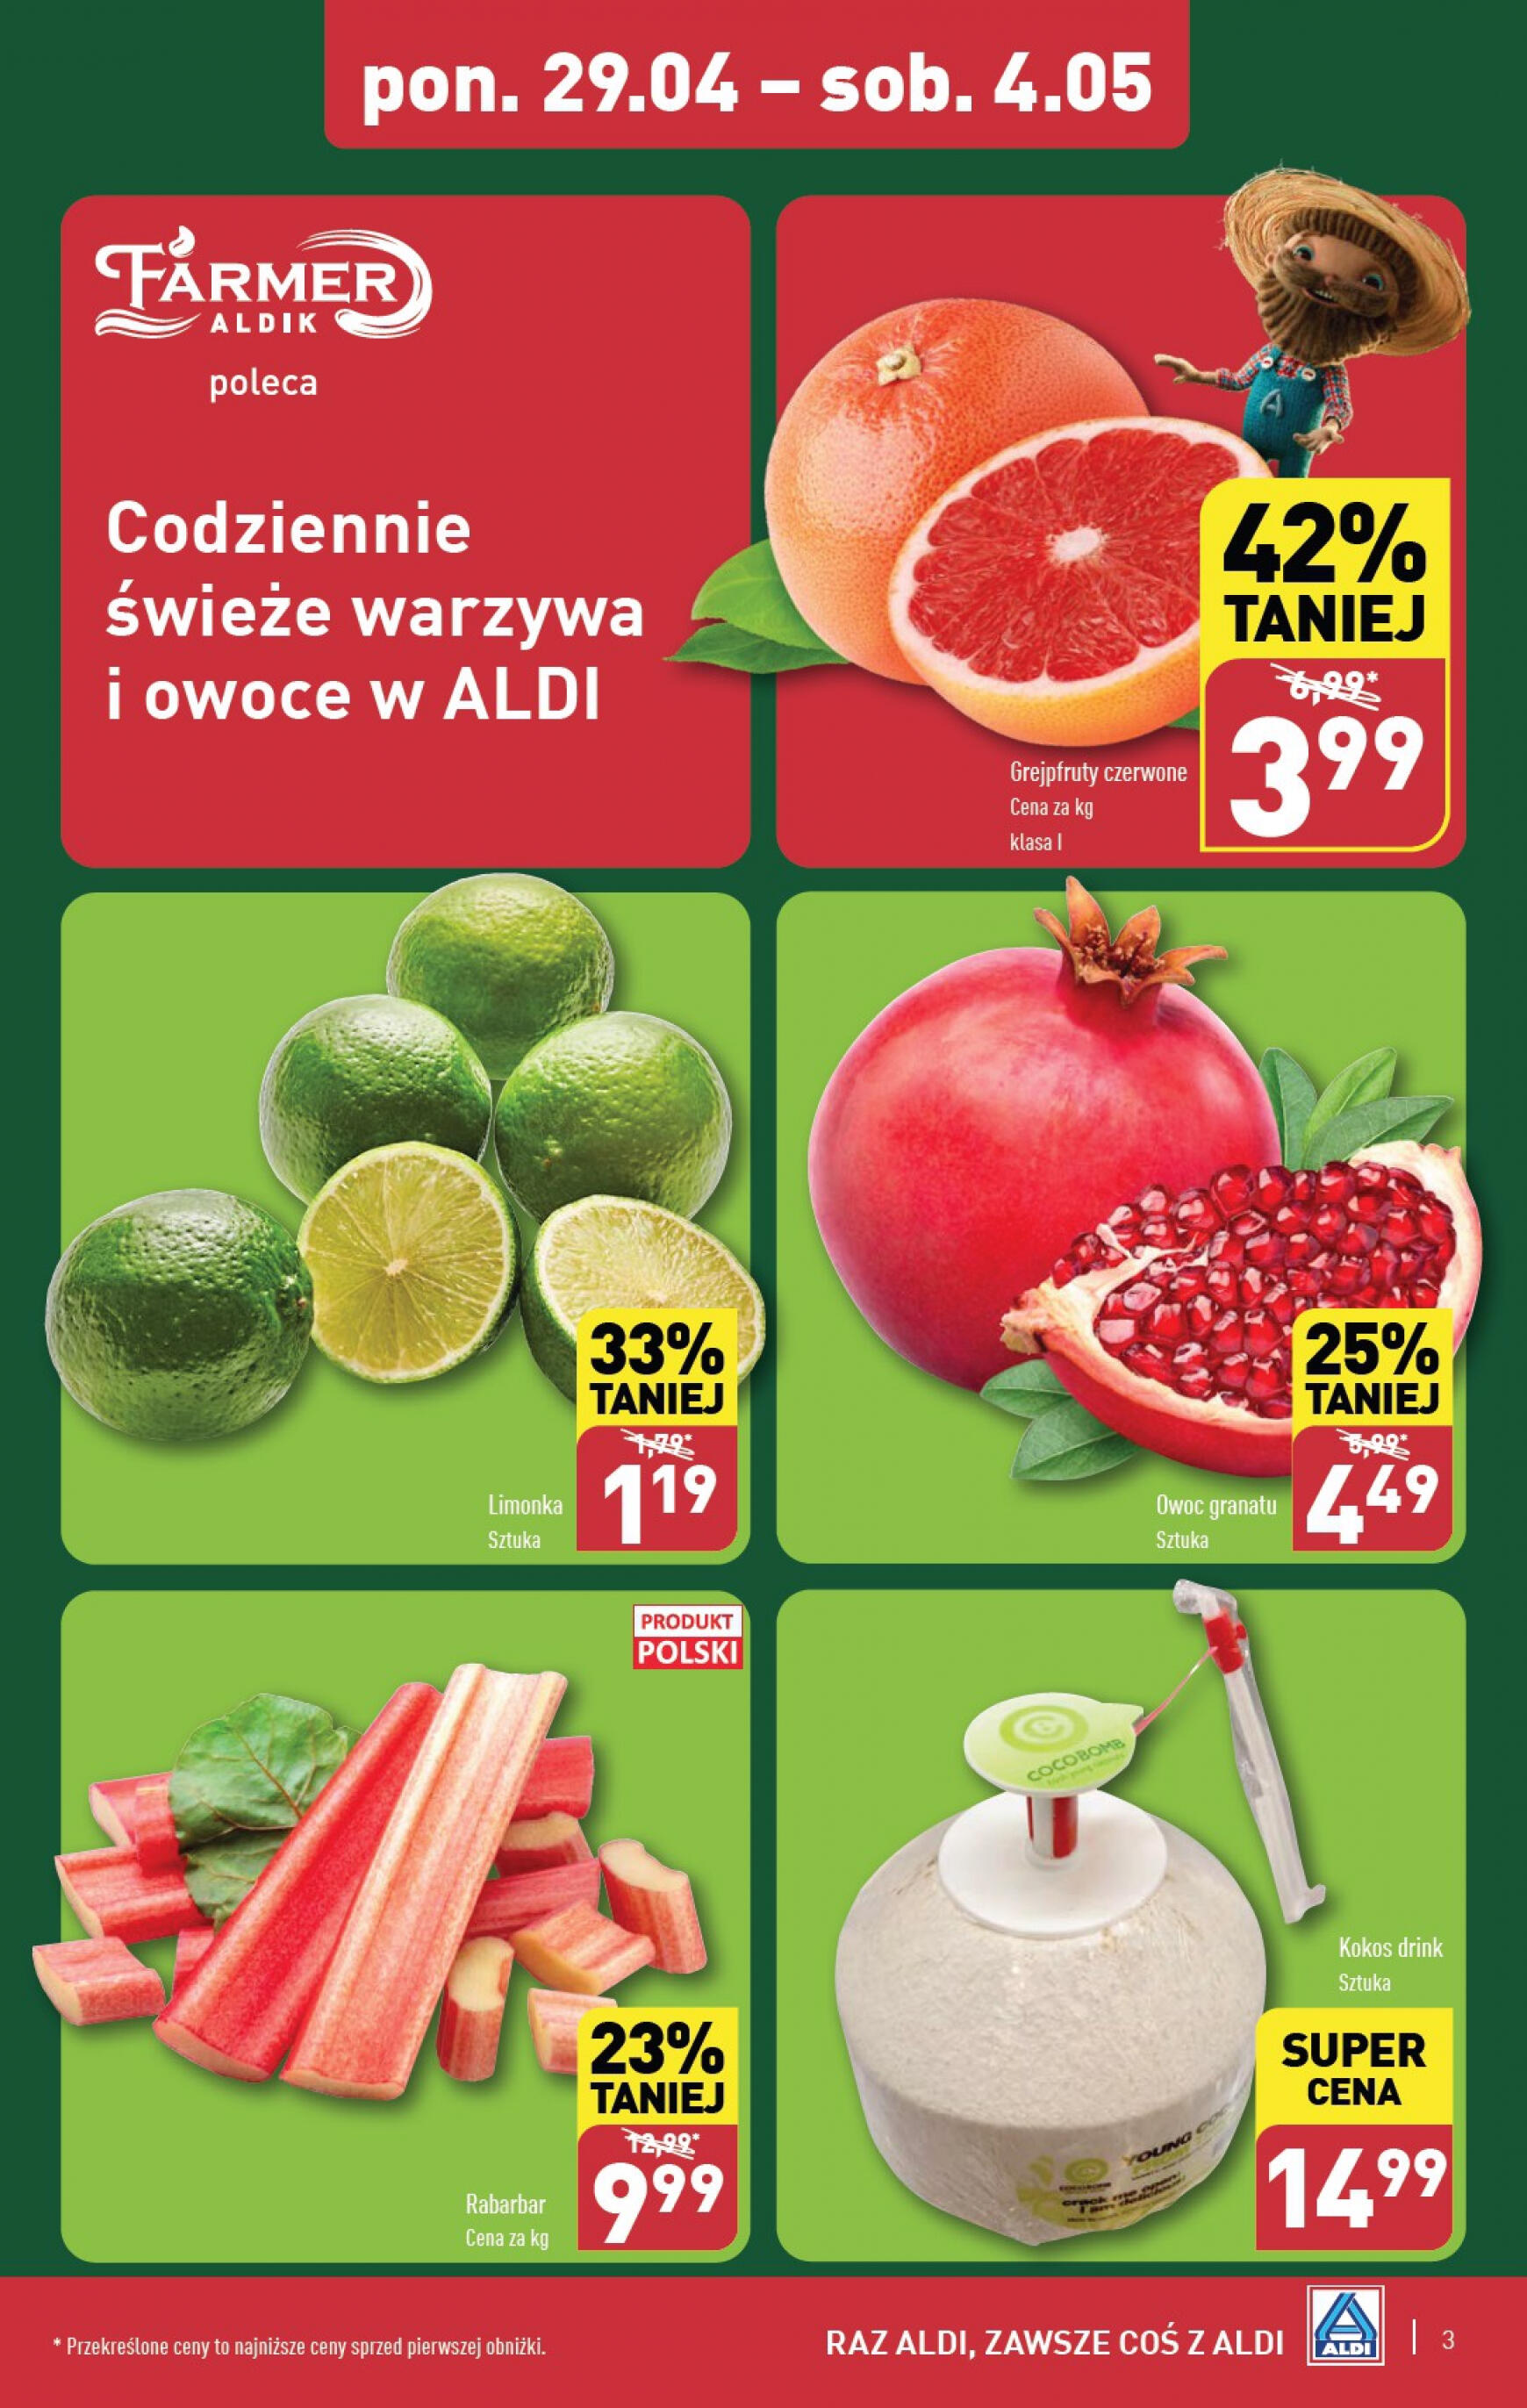 aldi - ALDI - Farmer ALDIK poleca świeże owoce i warzywa gazetka aktualna ważna od 29.04. - 04.05. - page: 3